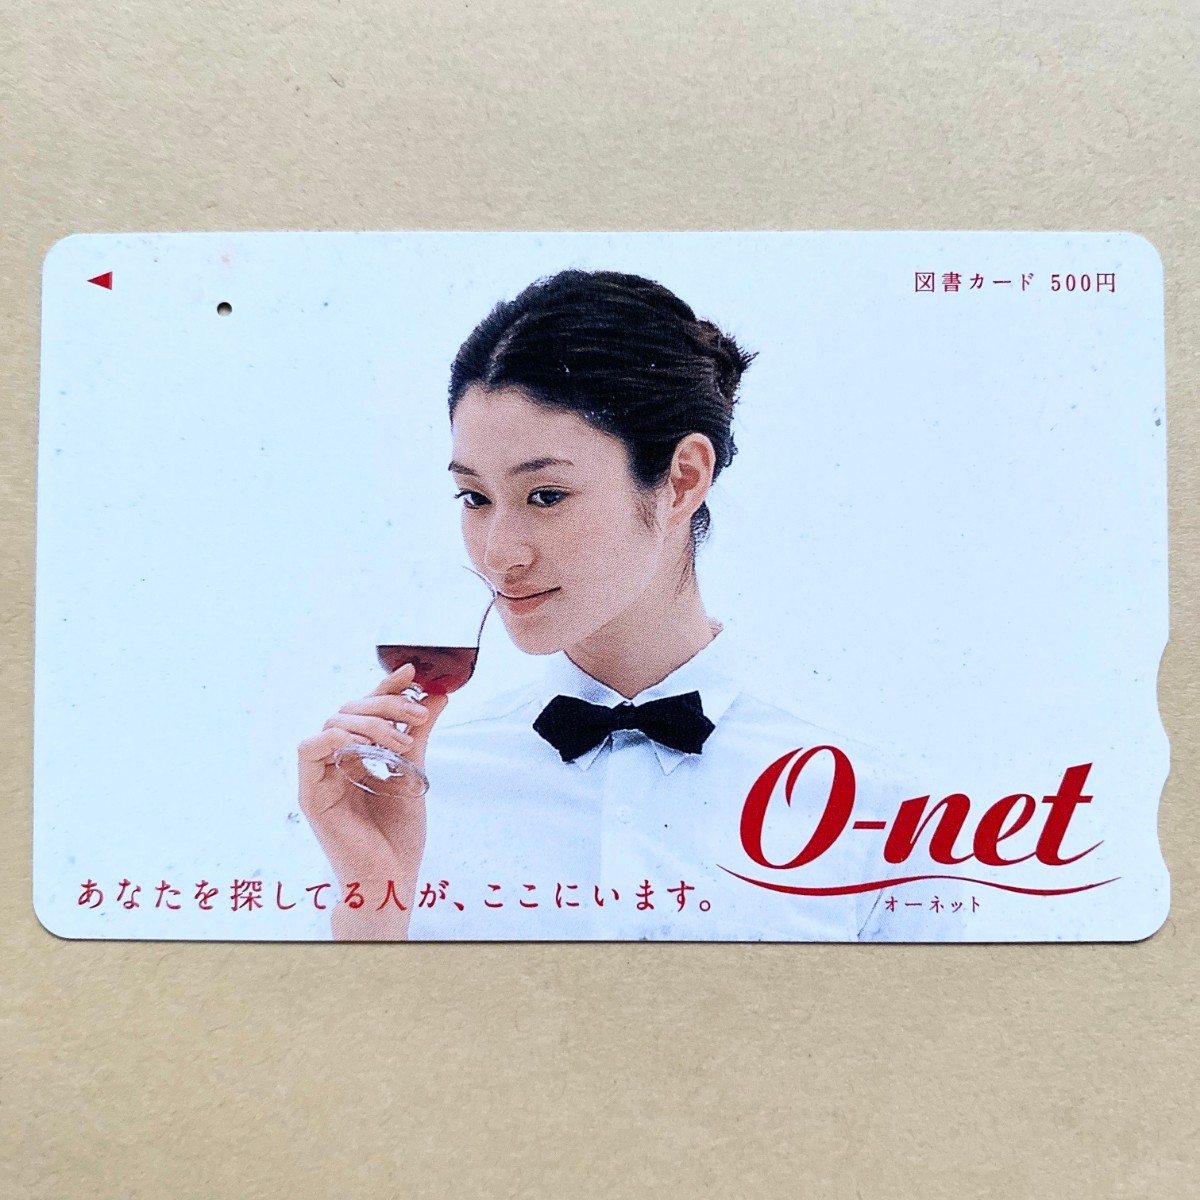 【使用済】 図書カード 小雪 O-netの画像1